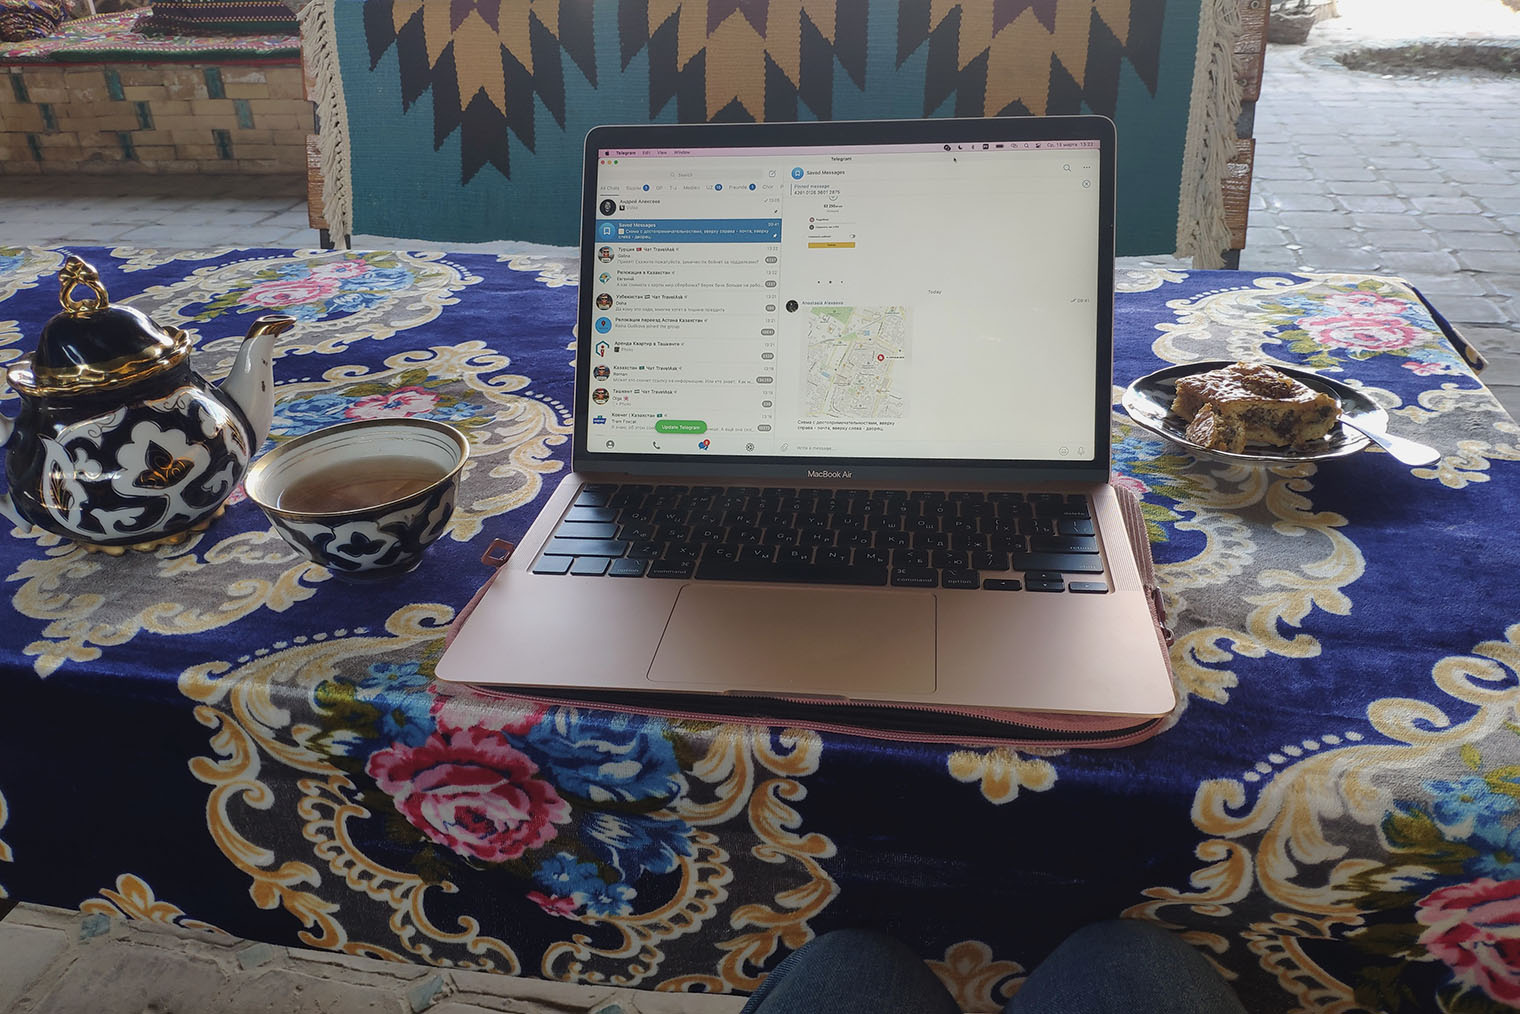 В Узбекистане я съездила в Бухару и Хиву. Было странно доставать ноутбук в такой традиционной обстановке, но от меня ждали текста